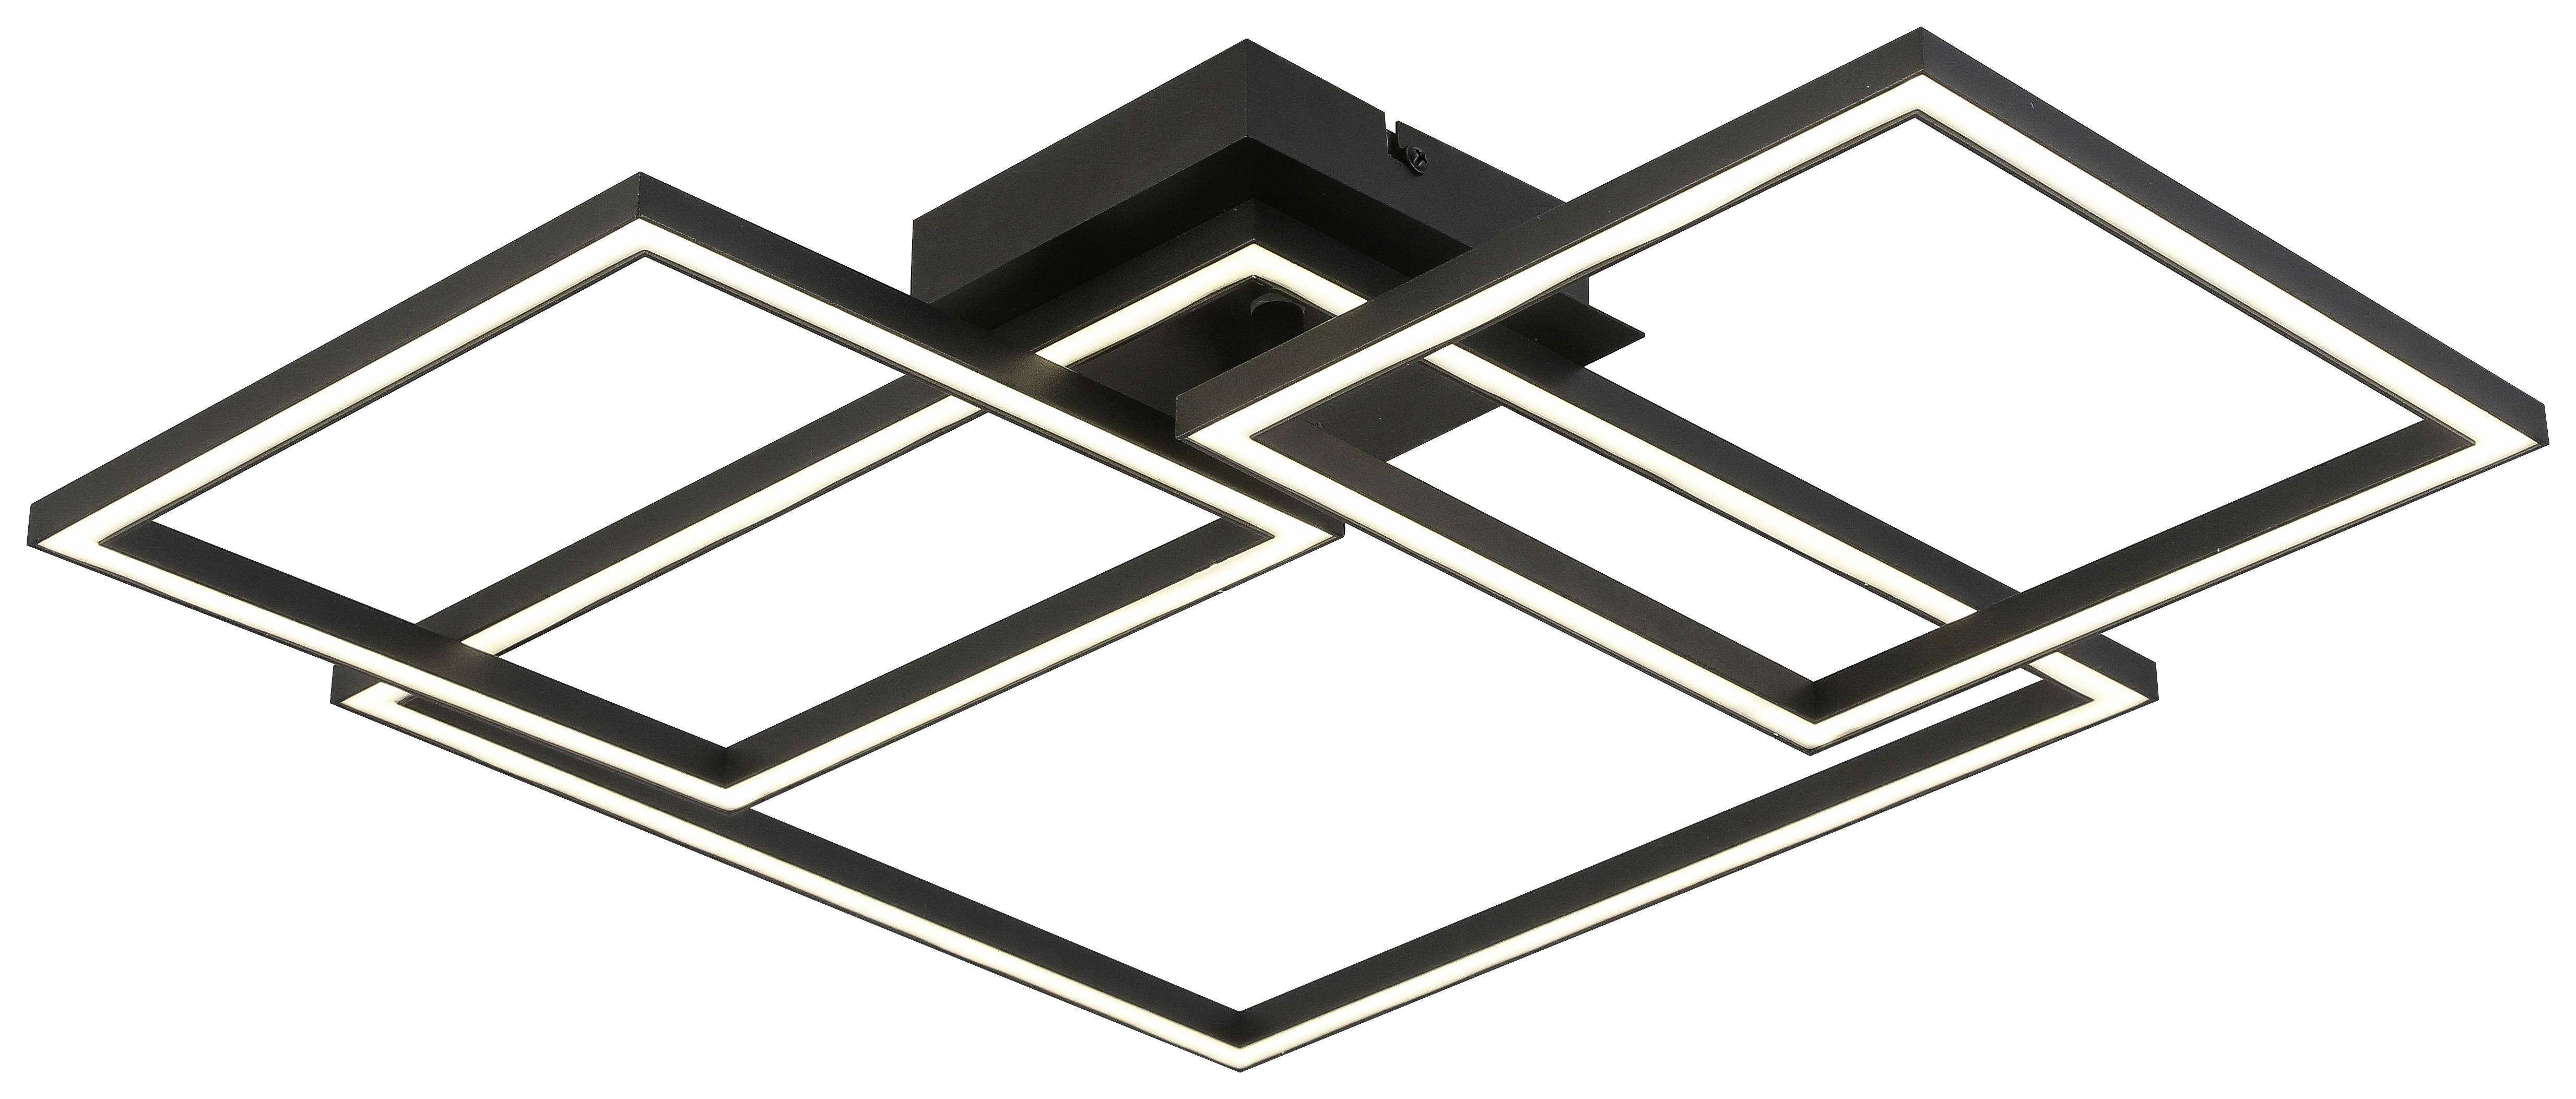 Stropna Led-svetilka Emilian -Jub- - črna, Moderno, kovina/umetna masa (55,2/47,5/7,6cm) - Premium Living